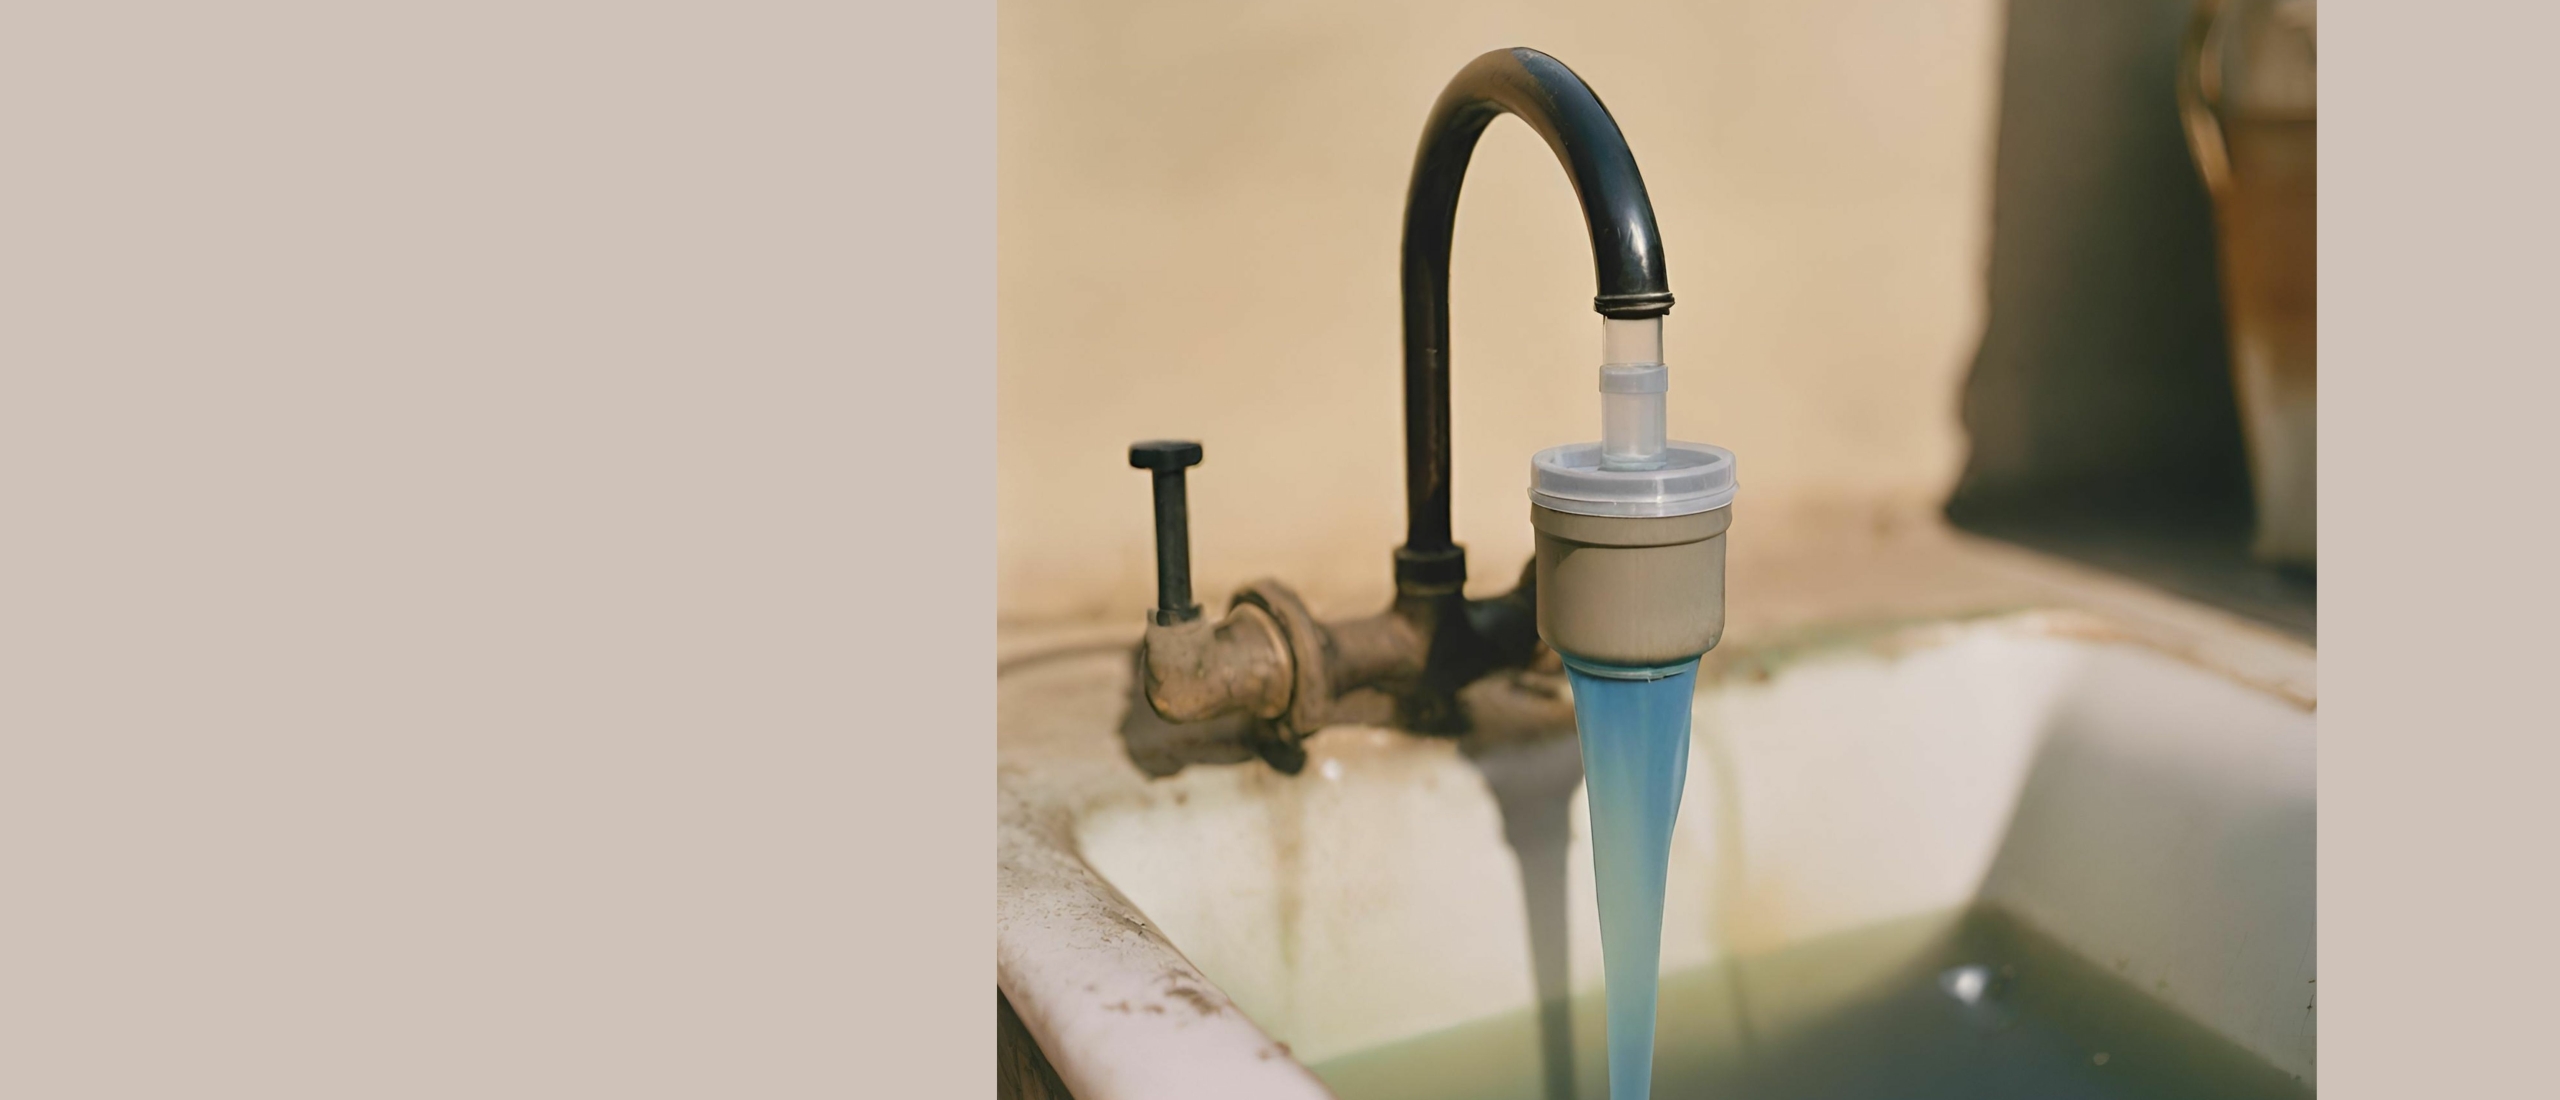 Is het nodig om in Nederland je kraanwater te filteren voor gebruik?